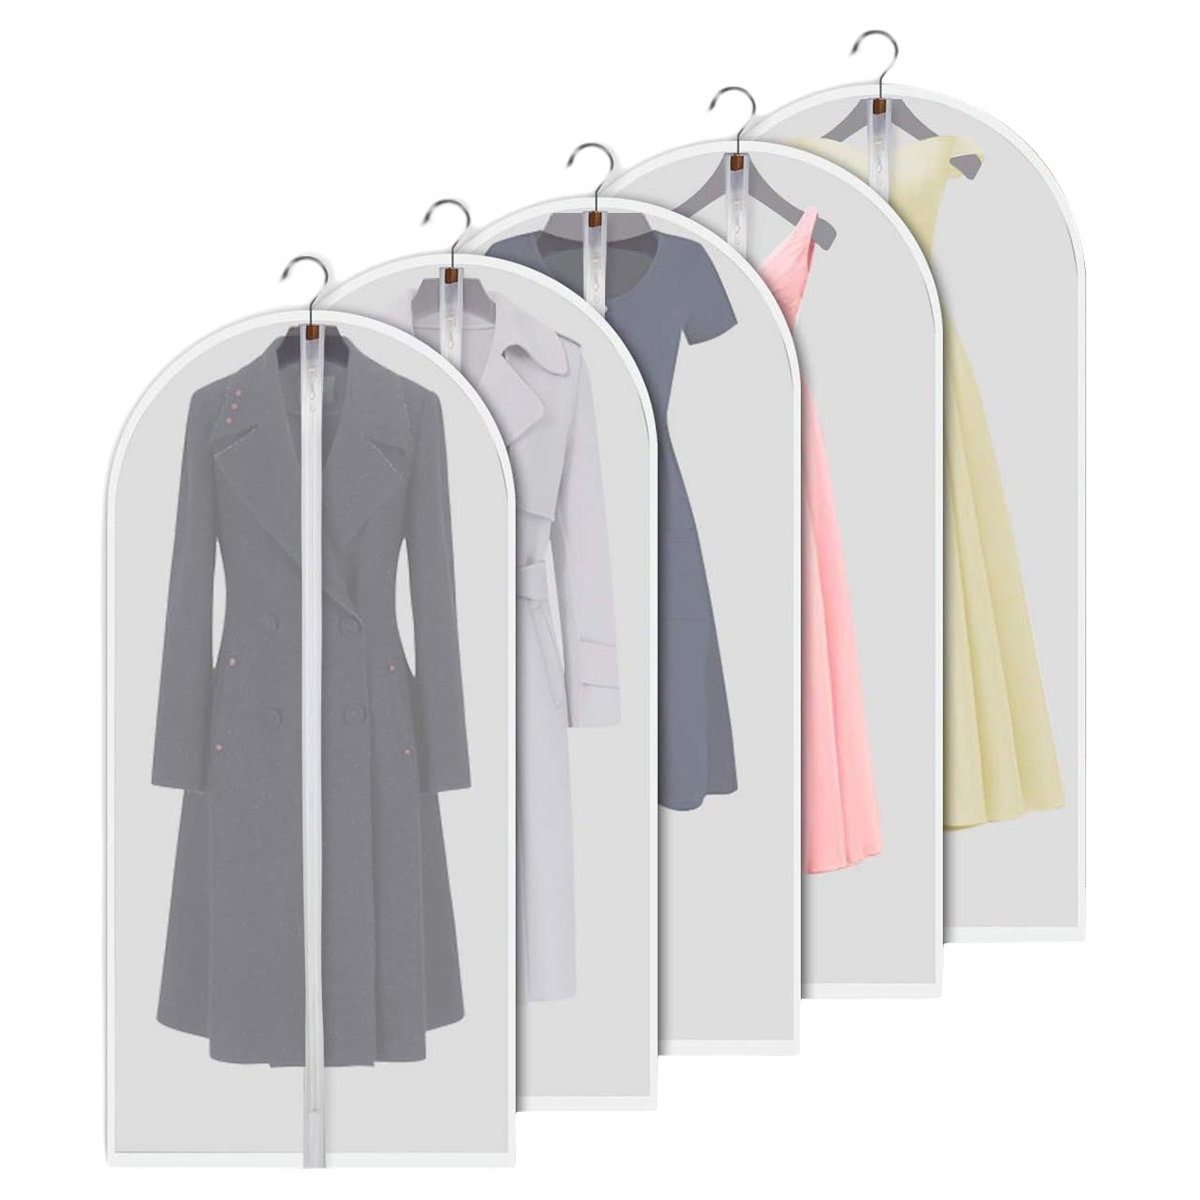 Jormftte Kleidersack Kleidersack Anzug Kleidersäcke, Transparent Atmungsaktiver Stoff